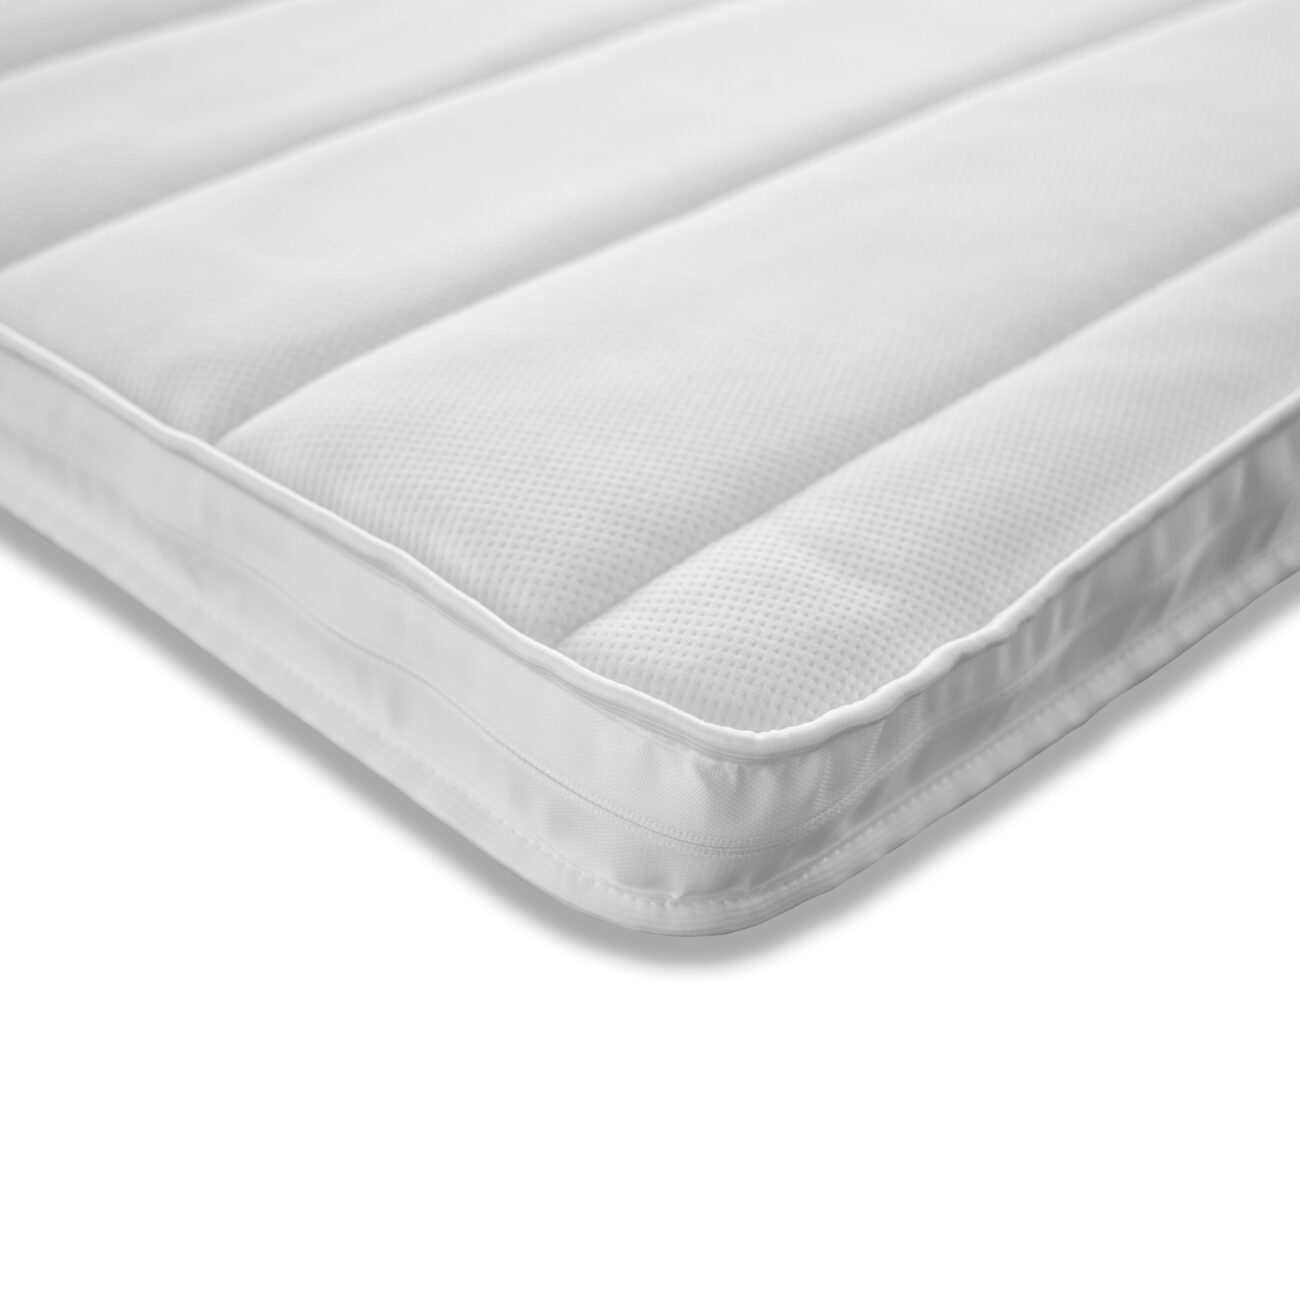 Bed mattress Quilt luxury 7cm